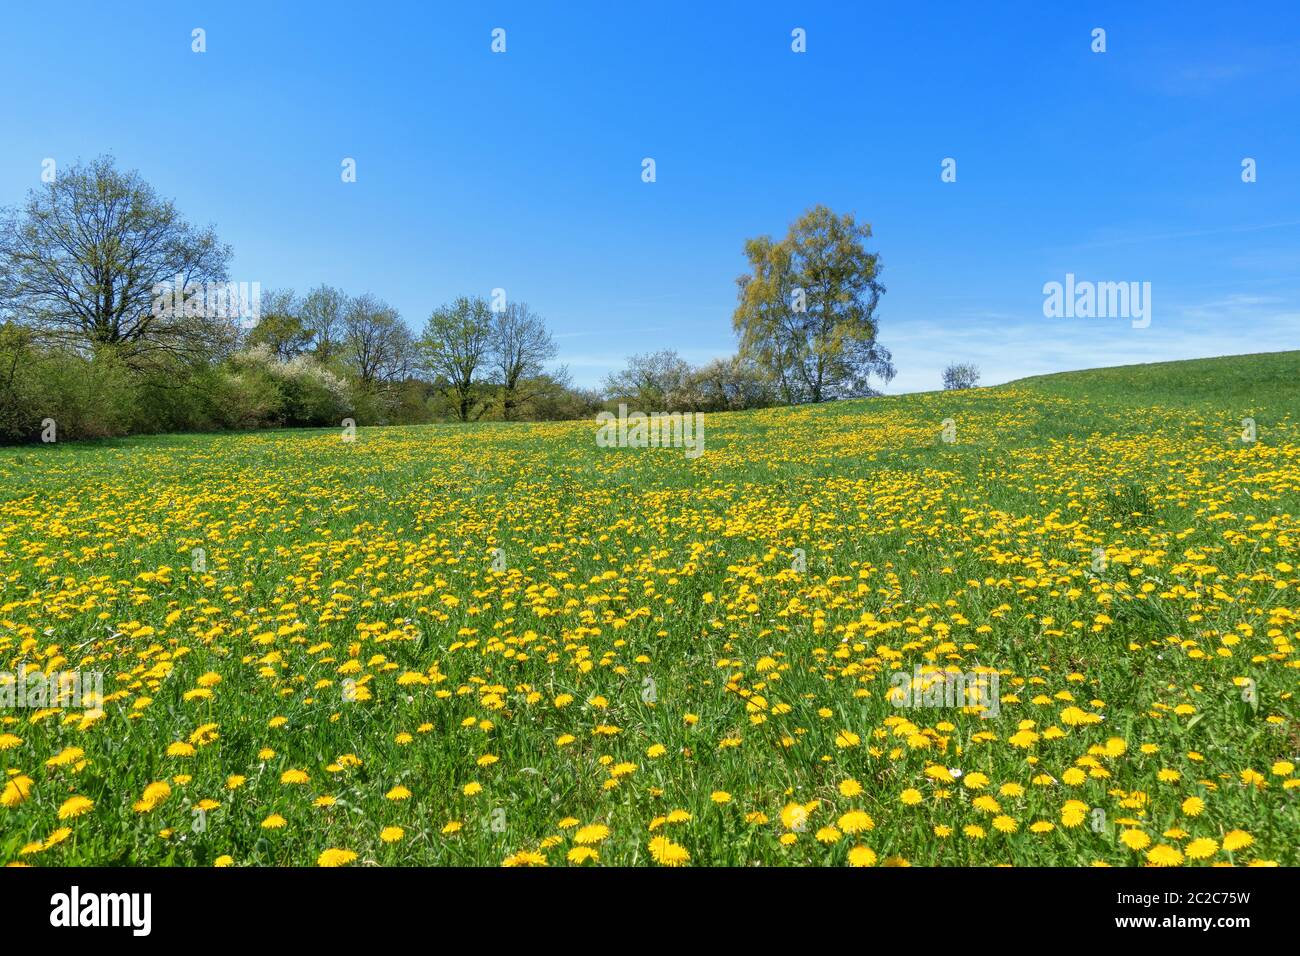 Prairie de fleurs idyllique avec pissenlit jaune en fleurs devant la rangée d'arbres et de buissons au printemps Banque D'Images